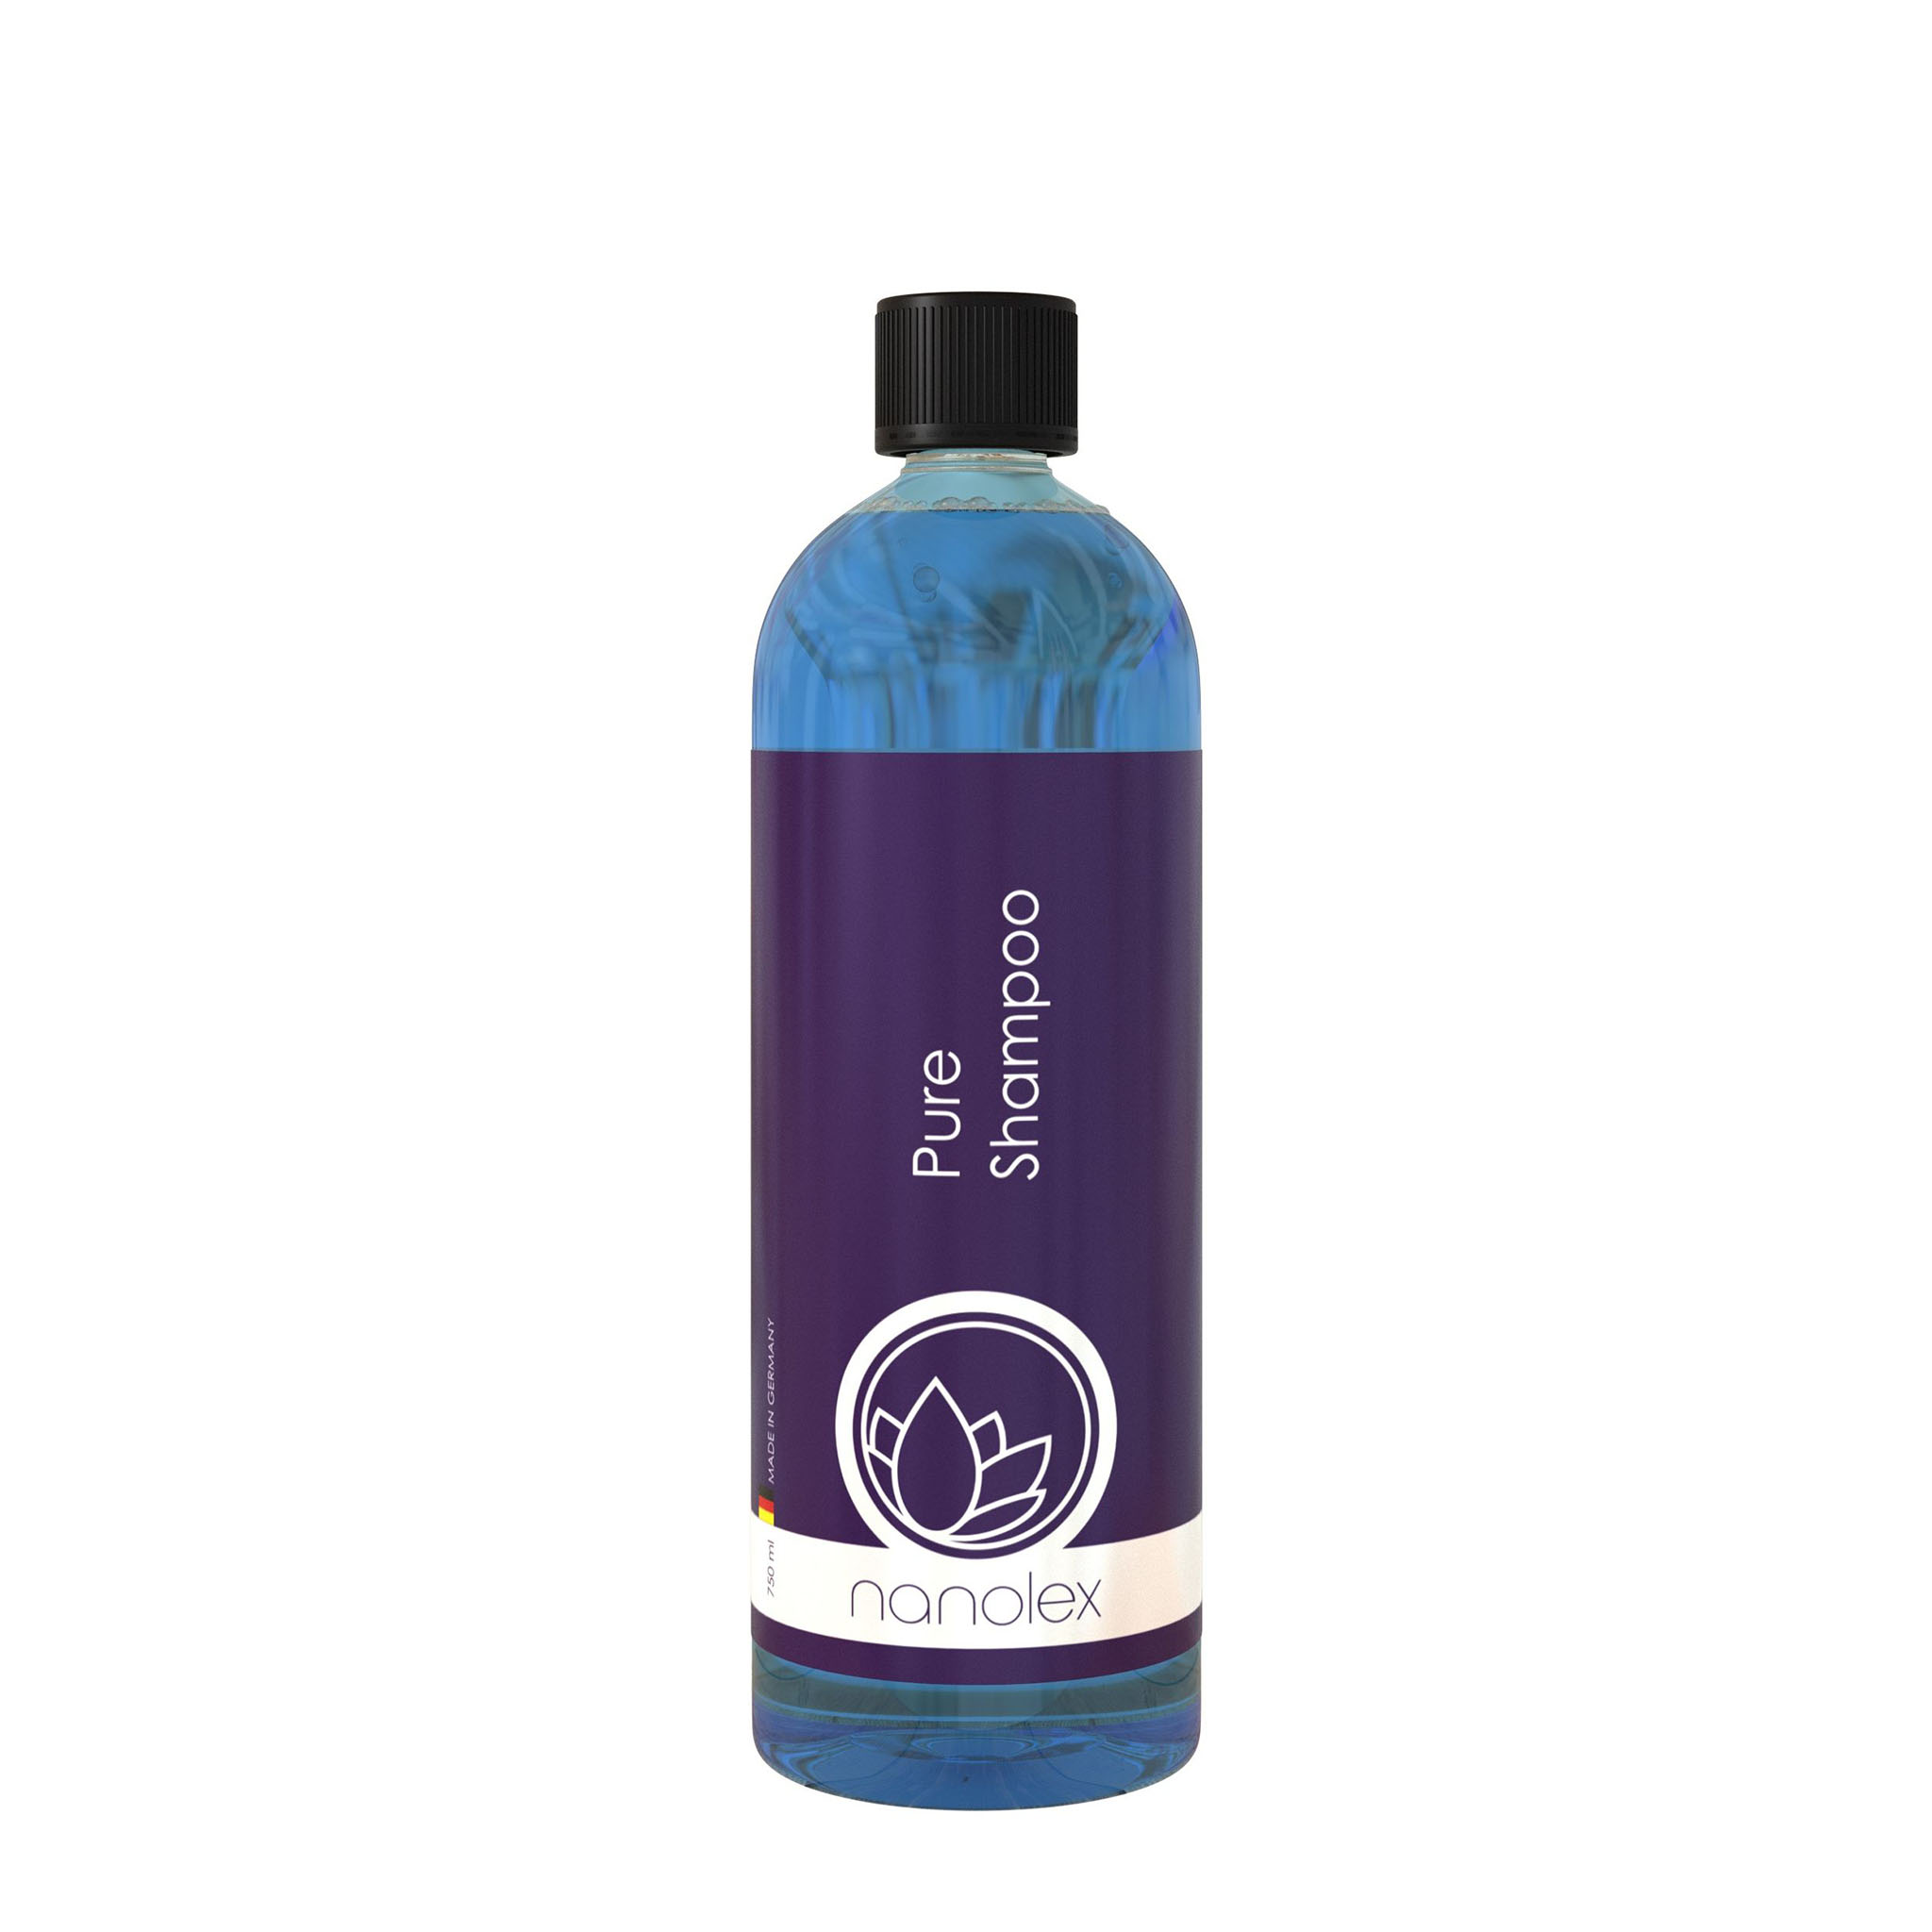 Bilschampo Nanolex Pure Shampoo, 5000 ml